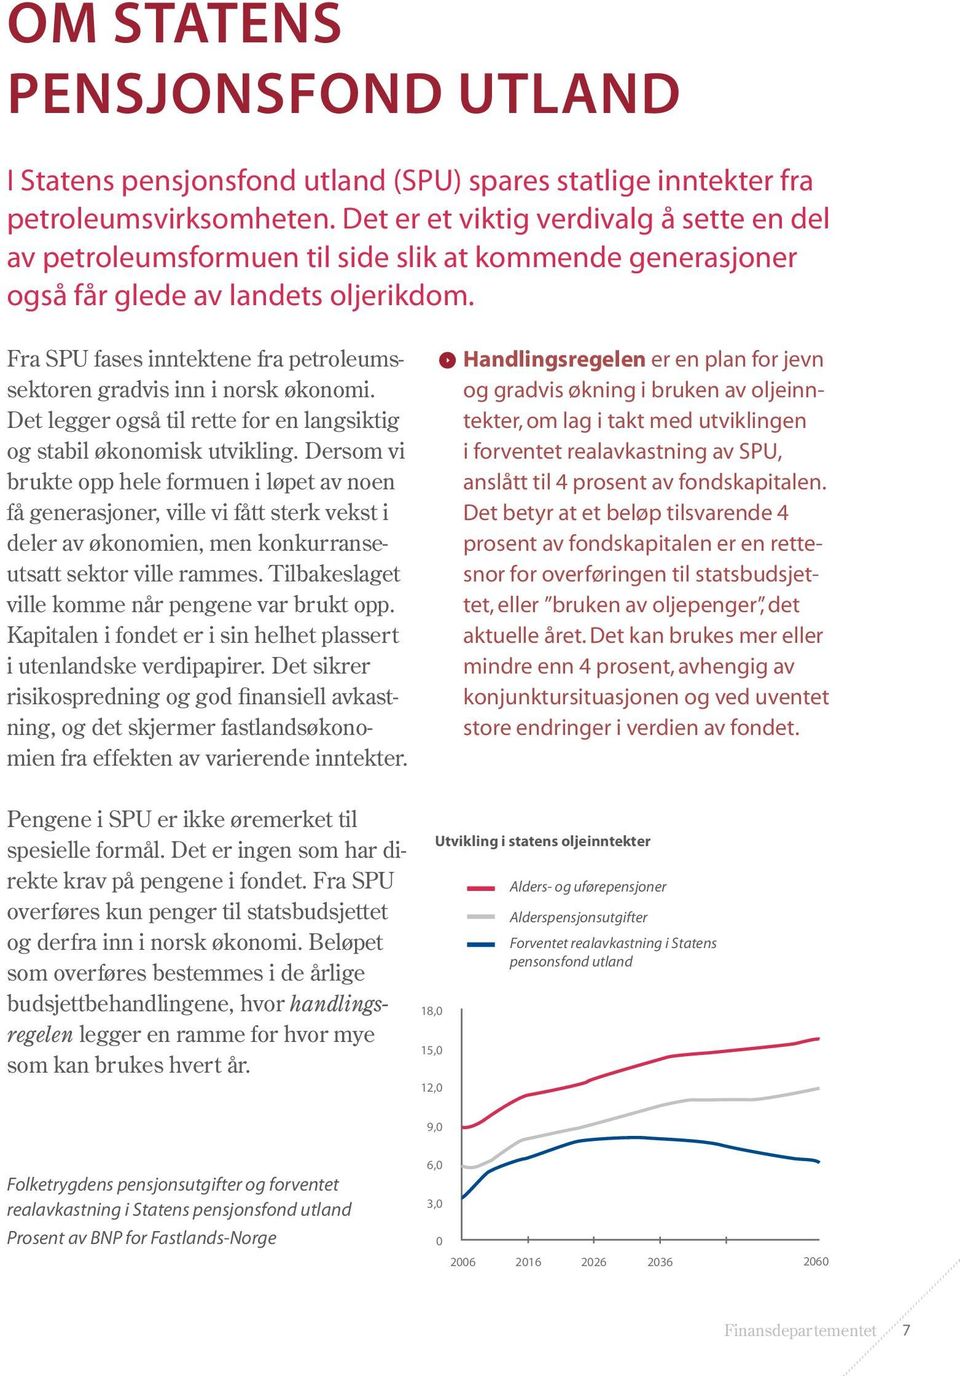 Fra SPU fases inntektene fra petroleumssektoren gradvis inn i norsk økonomi. Det legger også til rette for en langsiktig og stabil økonomisk utvikling.